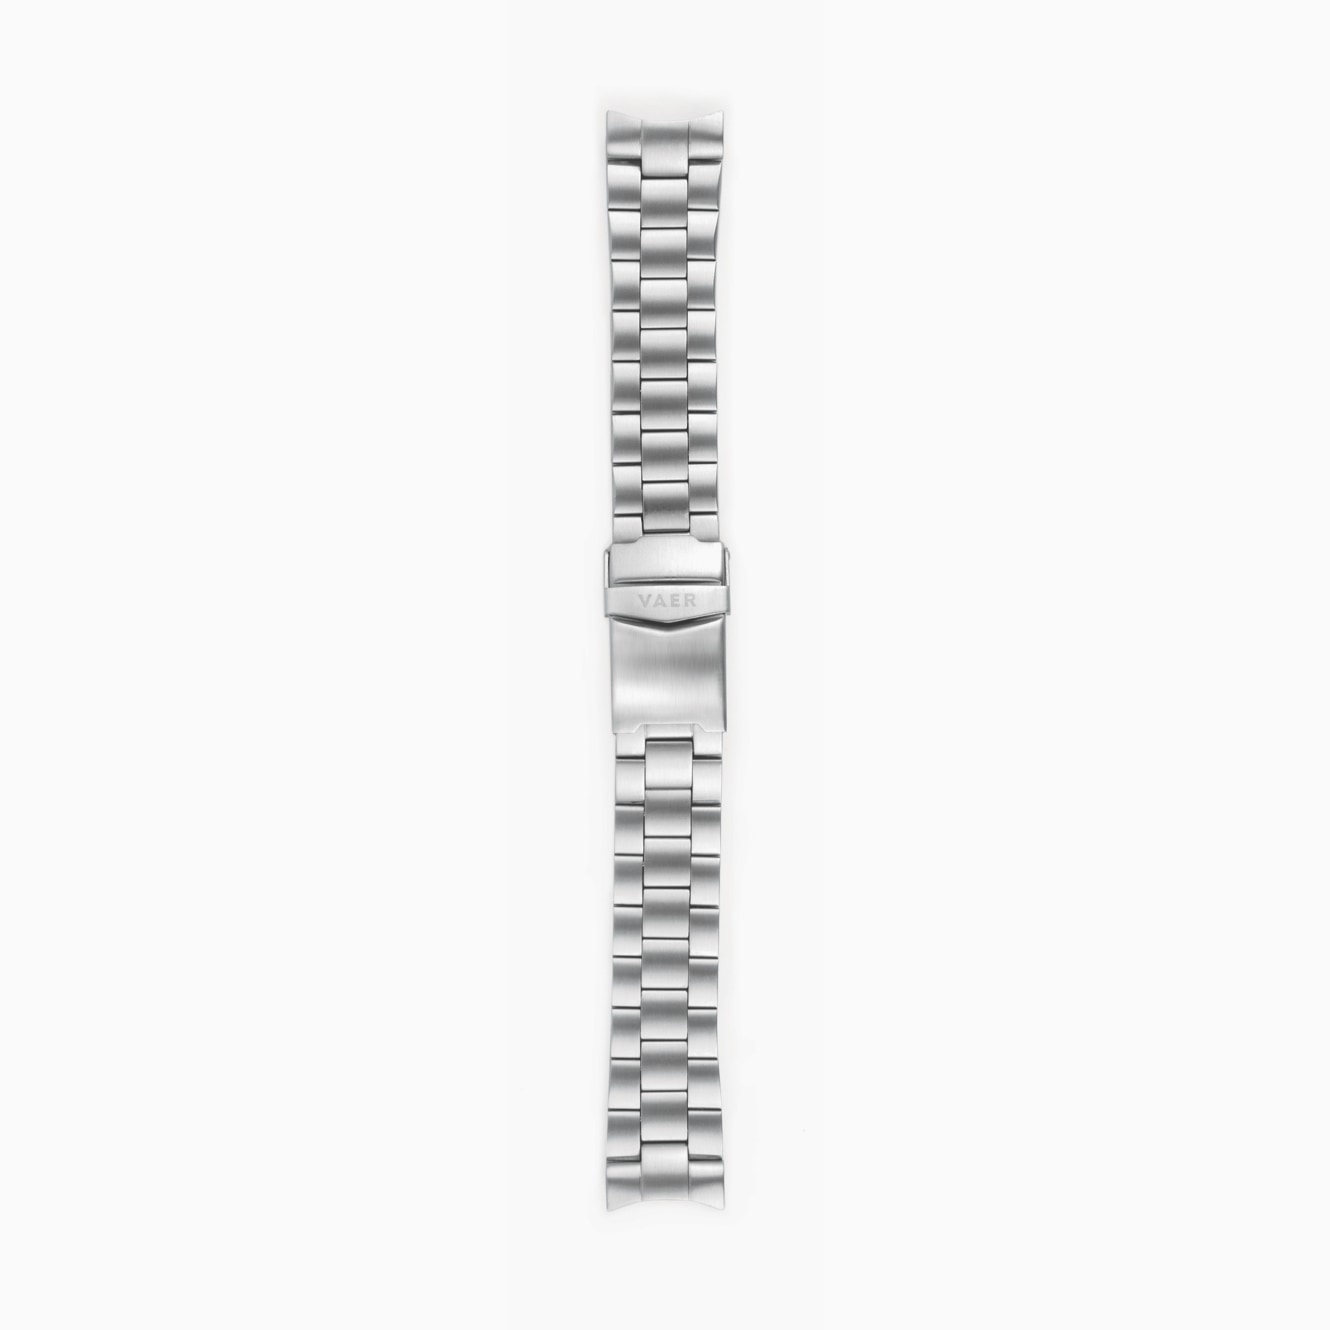 Standard Quick Release 3-Link Bracelet